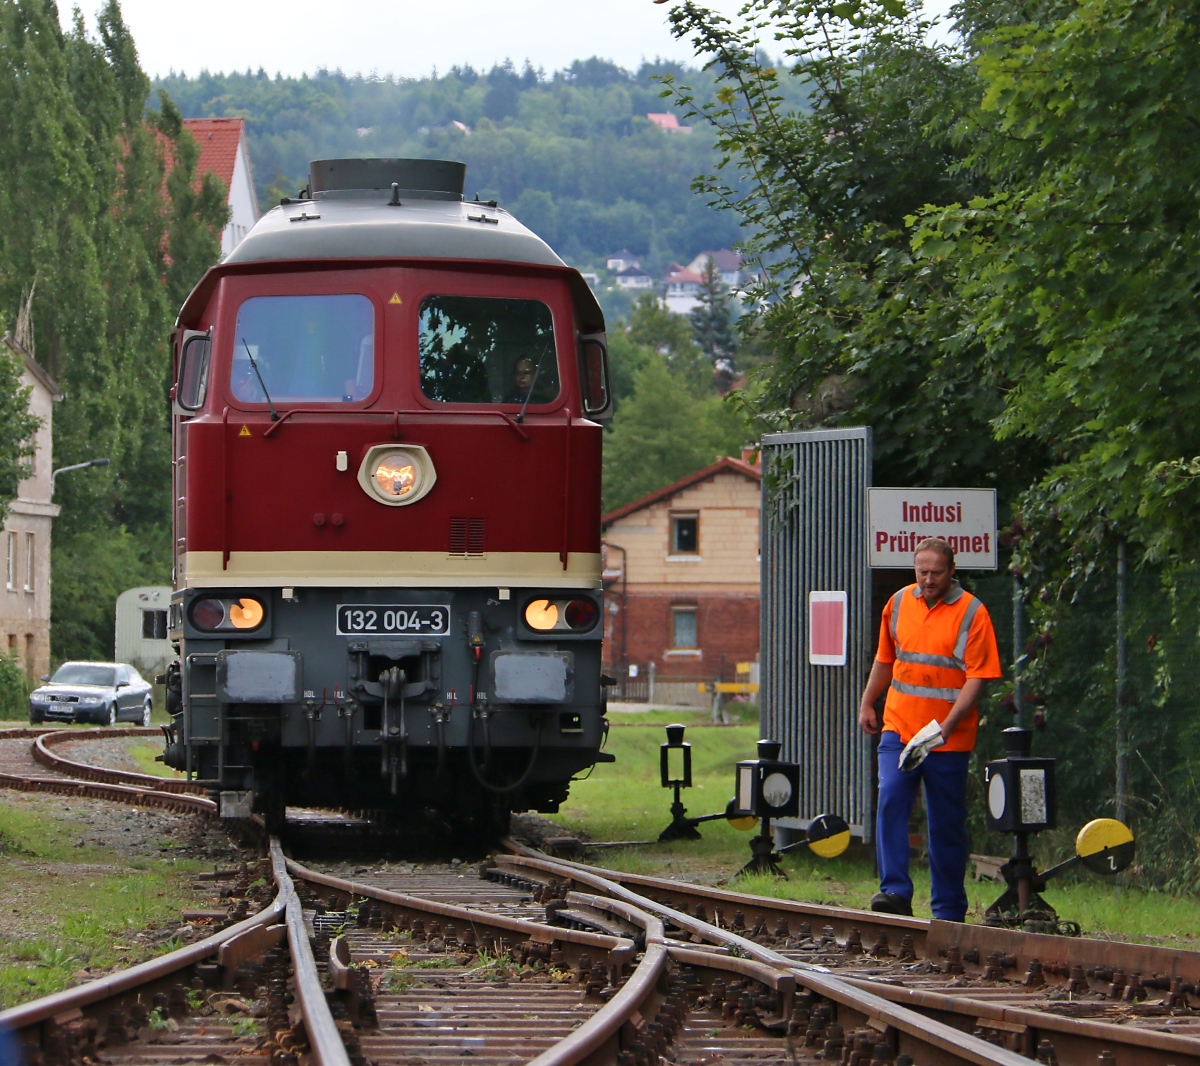 Macht Platz für die Dicke. 132 004-3 bei der Einfahrt auf das Gelände des Dampflokwerks Meiningen. Aufgenommen am 05.09.2015 an den XXI. Meininger Dampfloktagen.